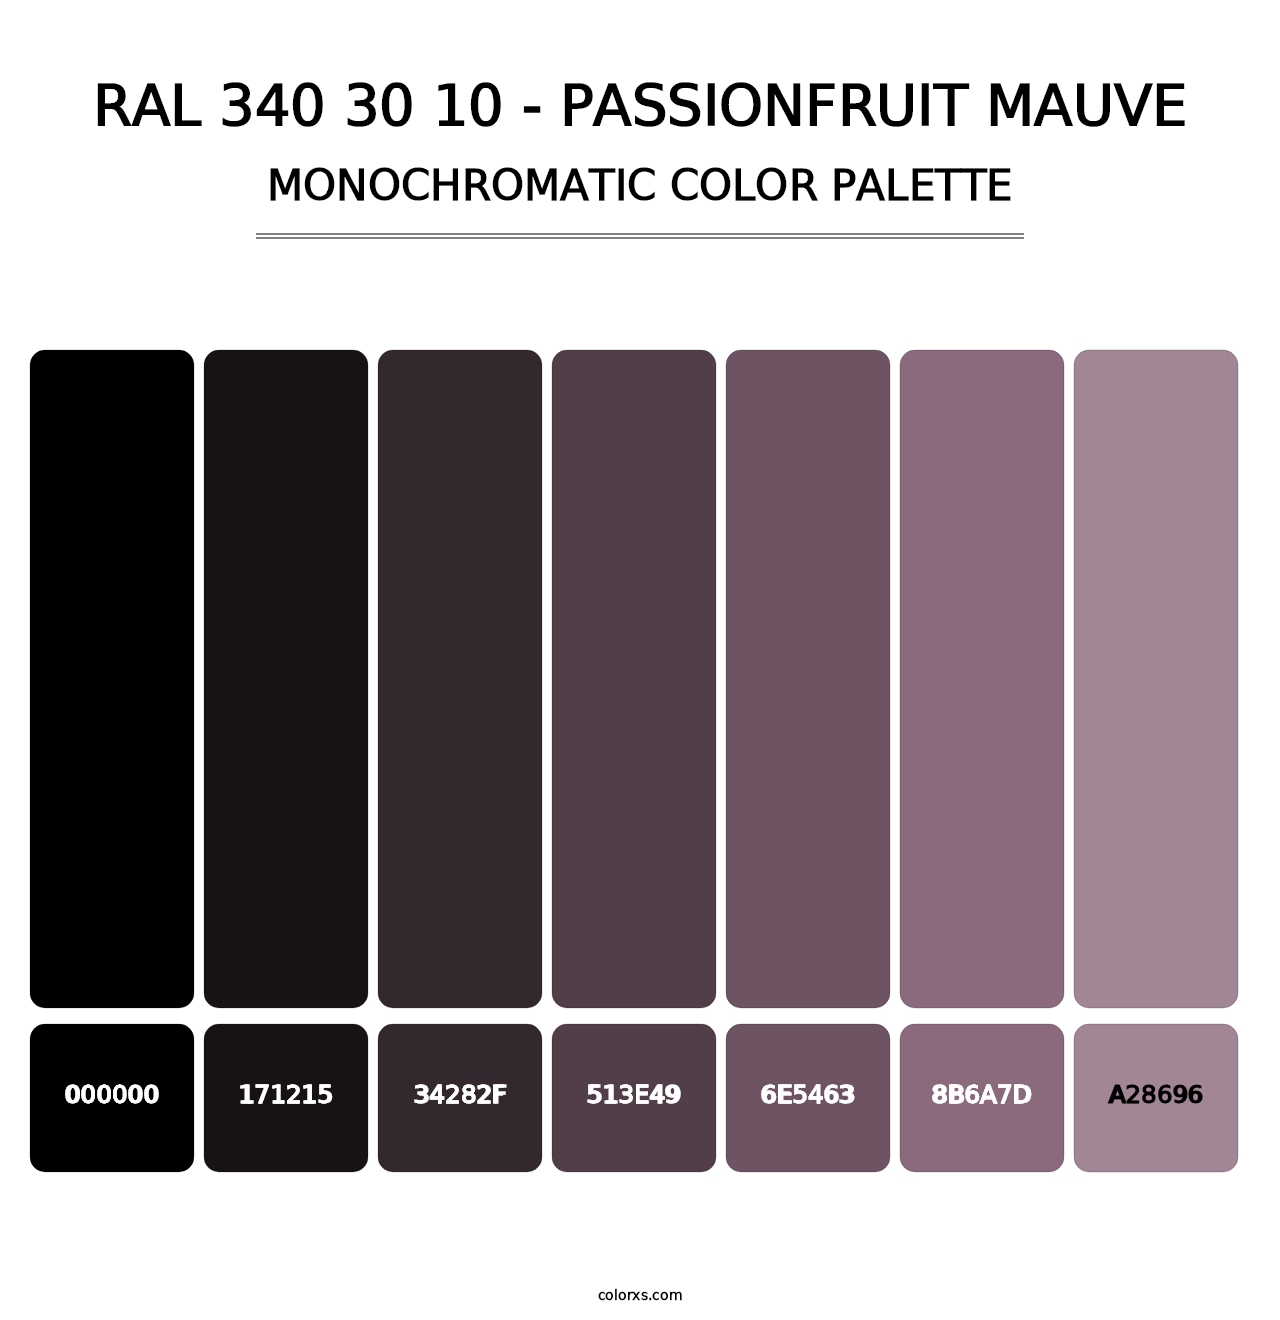 RAL 340 30 10 - Passionfruit Mauve - Monochromatic Color Palette